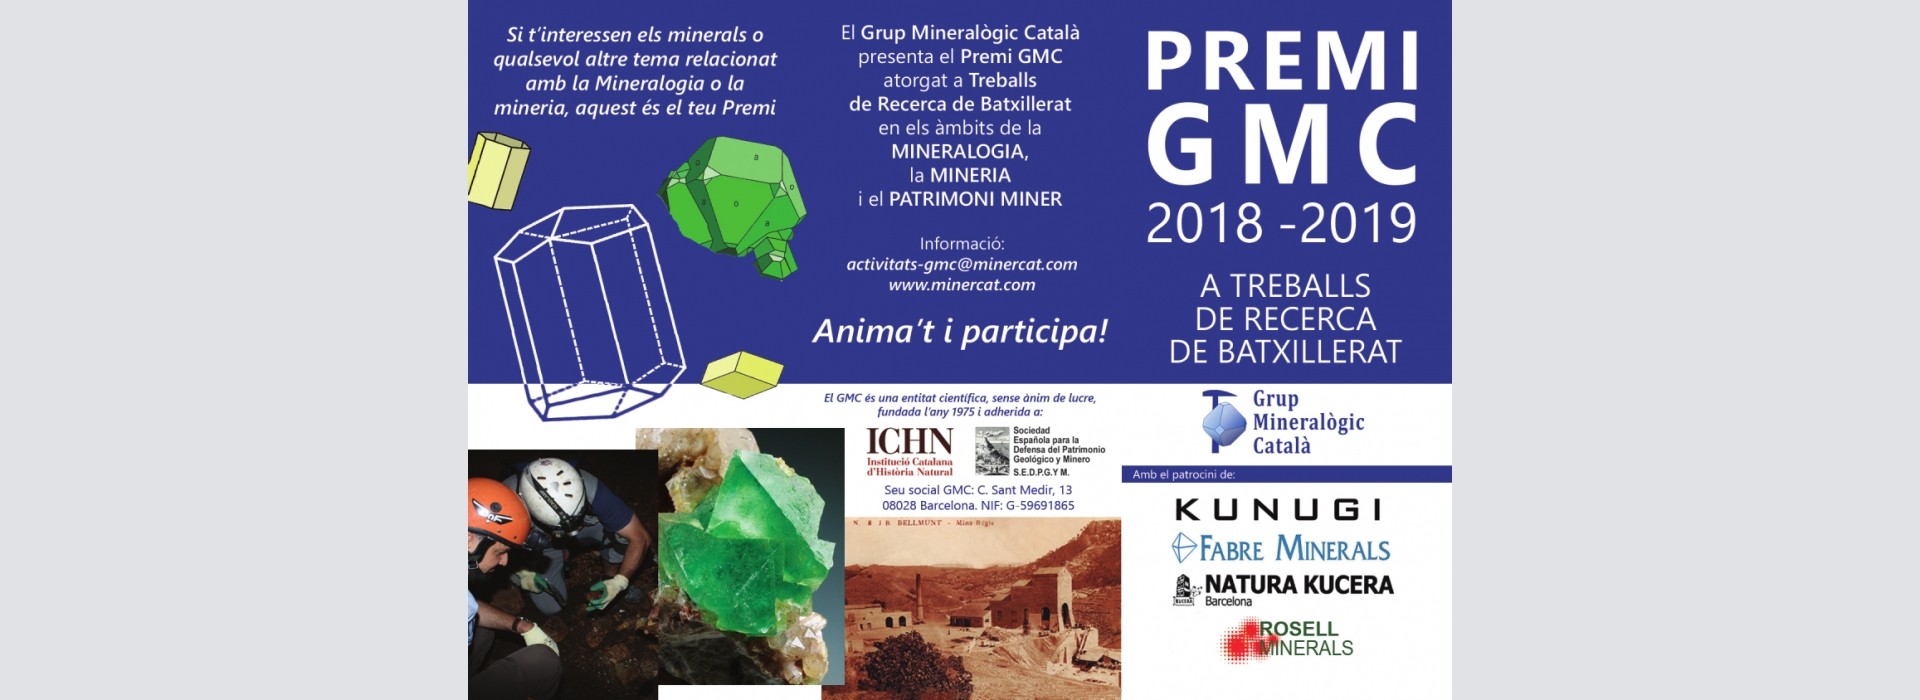 Premio GMC 2018-2019 a trabajos de investigación de bachillerato